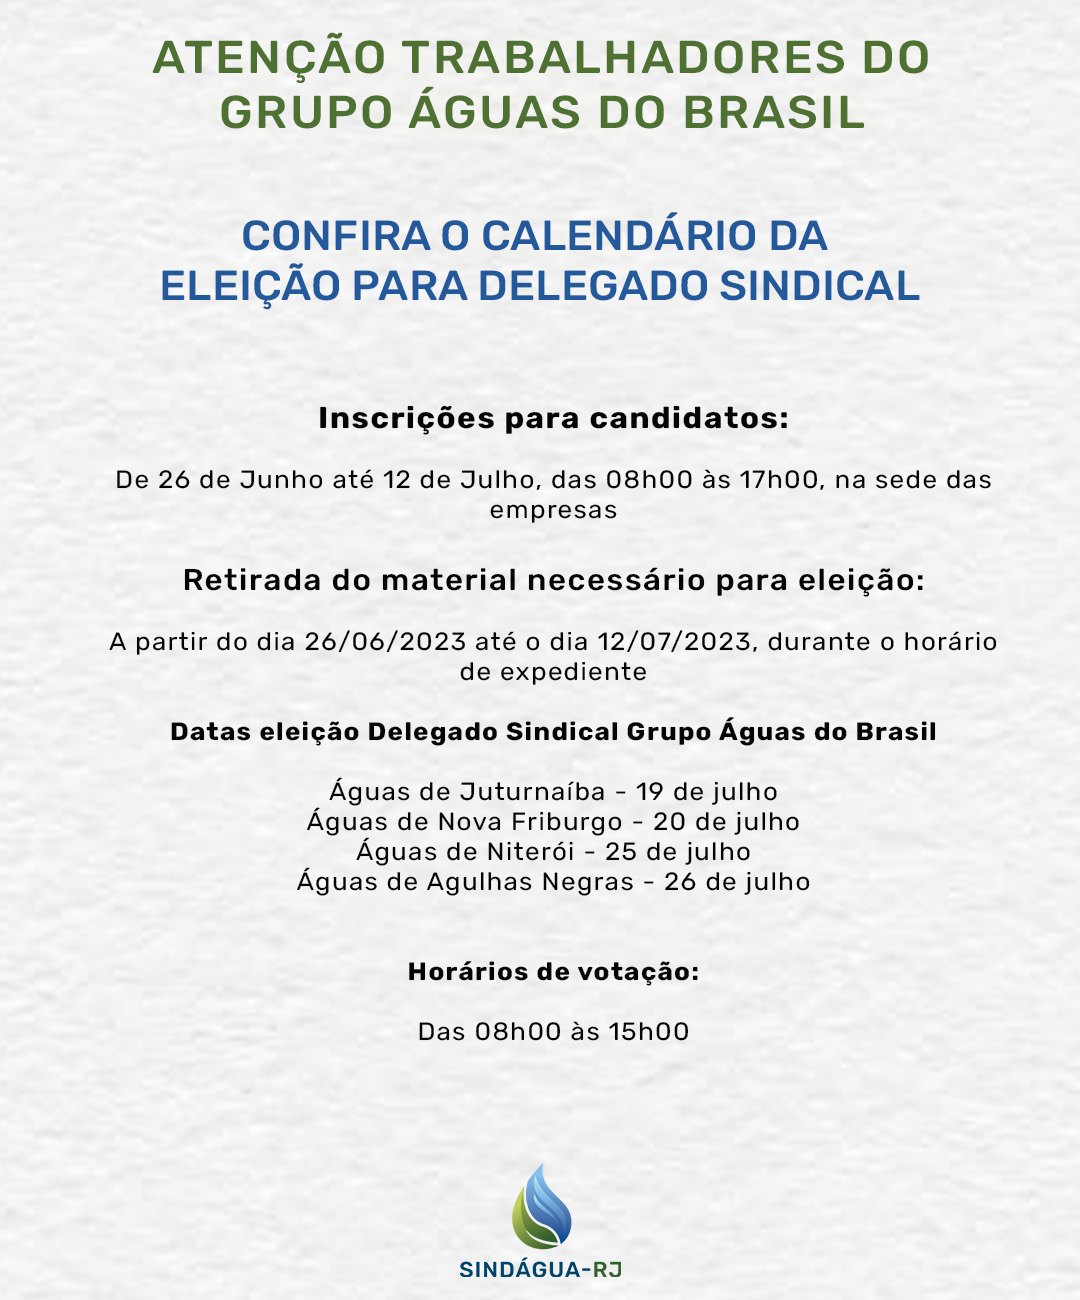 Atenção trabalhadores do Grupo Águas do Brasil! Confira o calendário da eleição para Delegado Sindical